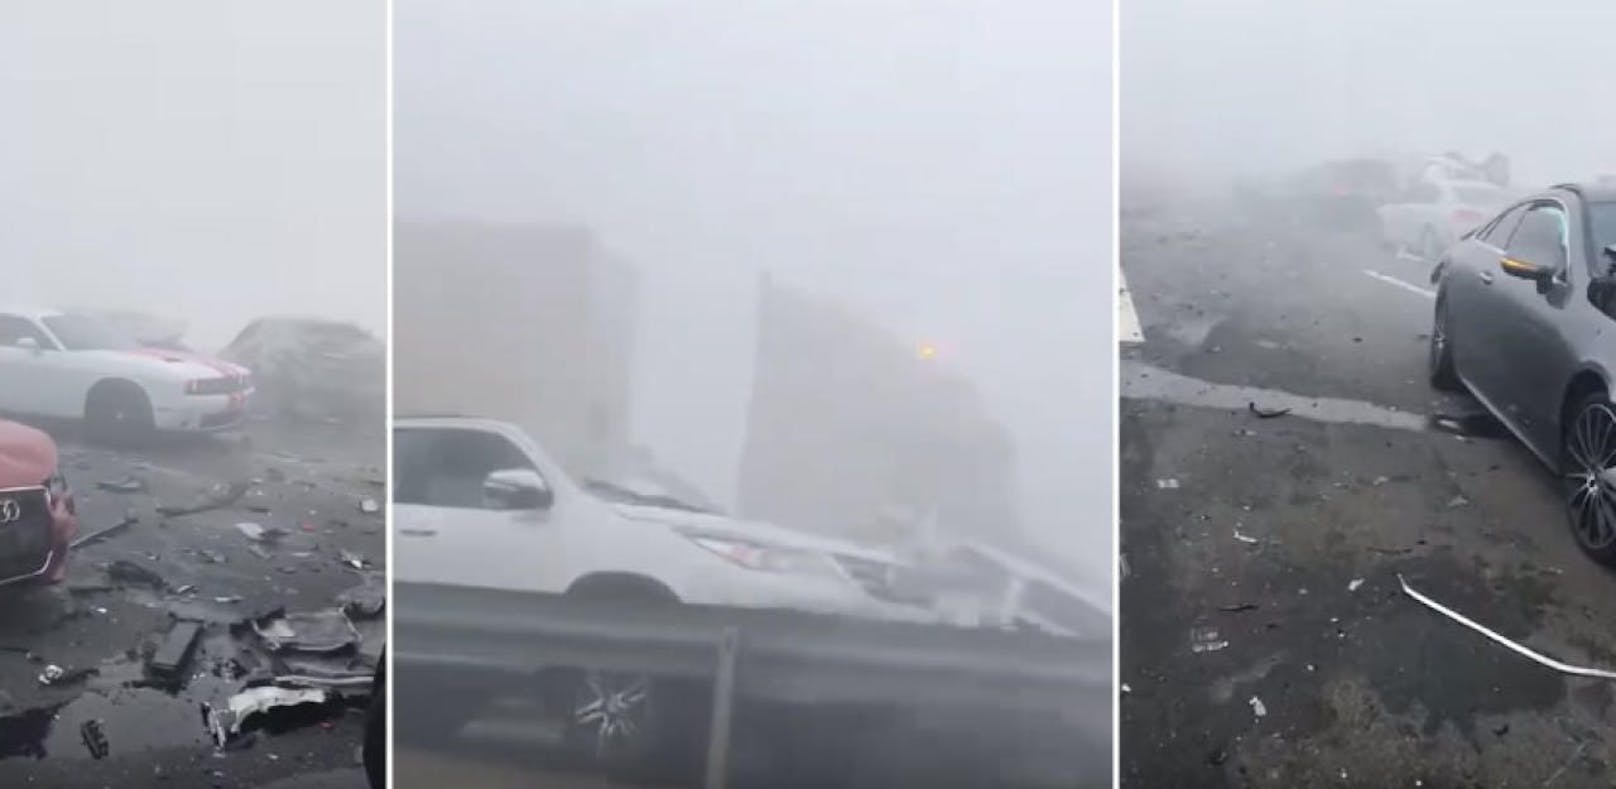 Nebel sorgt für Massen-Crash – dann kam Lkw